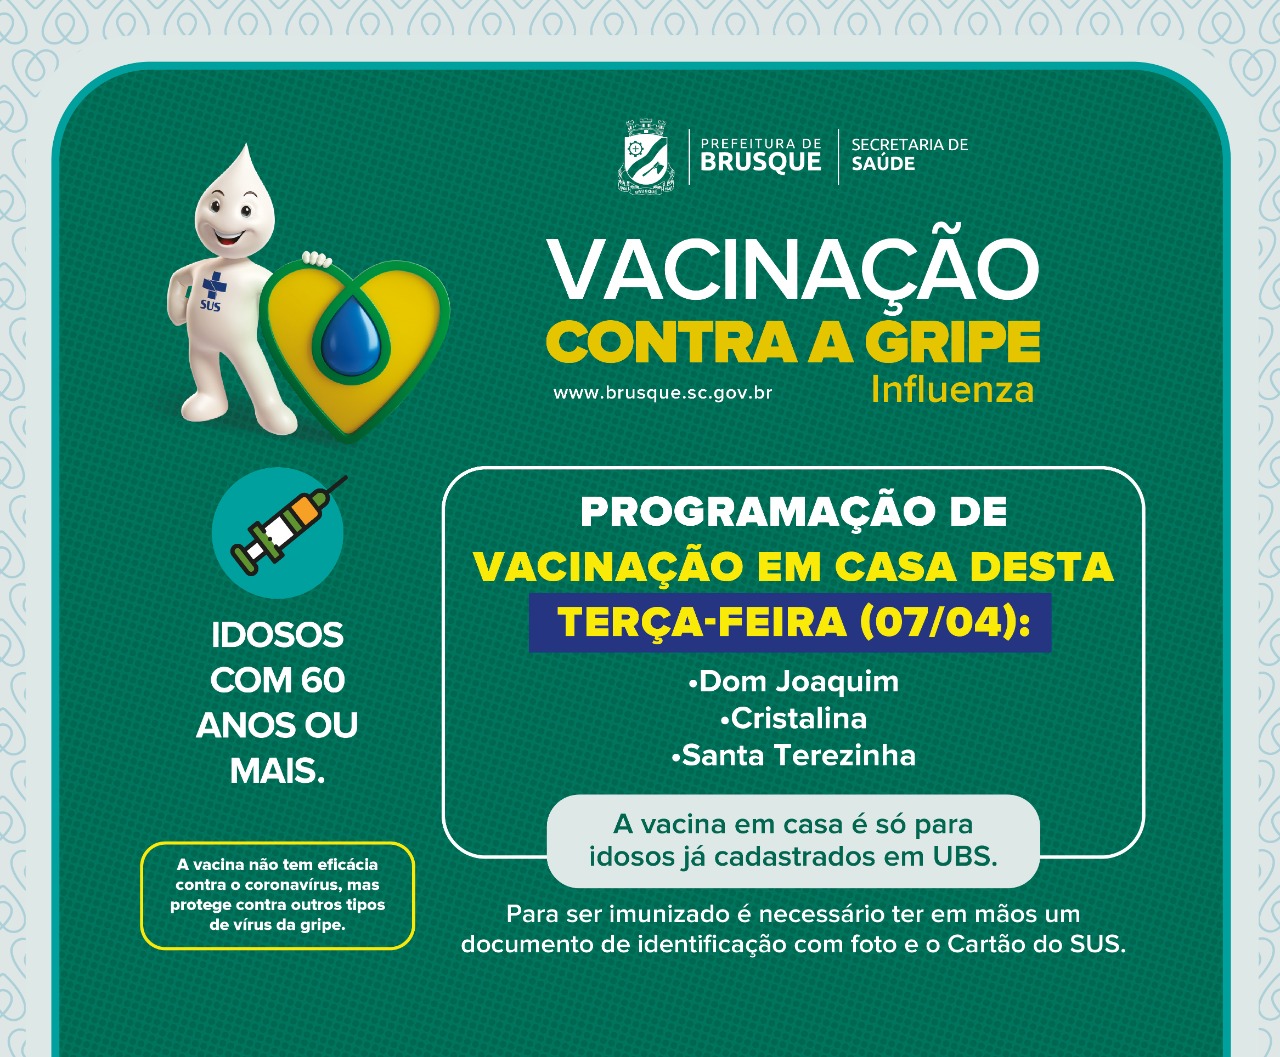 Cristalina, Dom Joaquim e Santa Terezinha recebem equipes para vacinação em domicílio